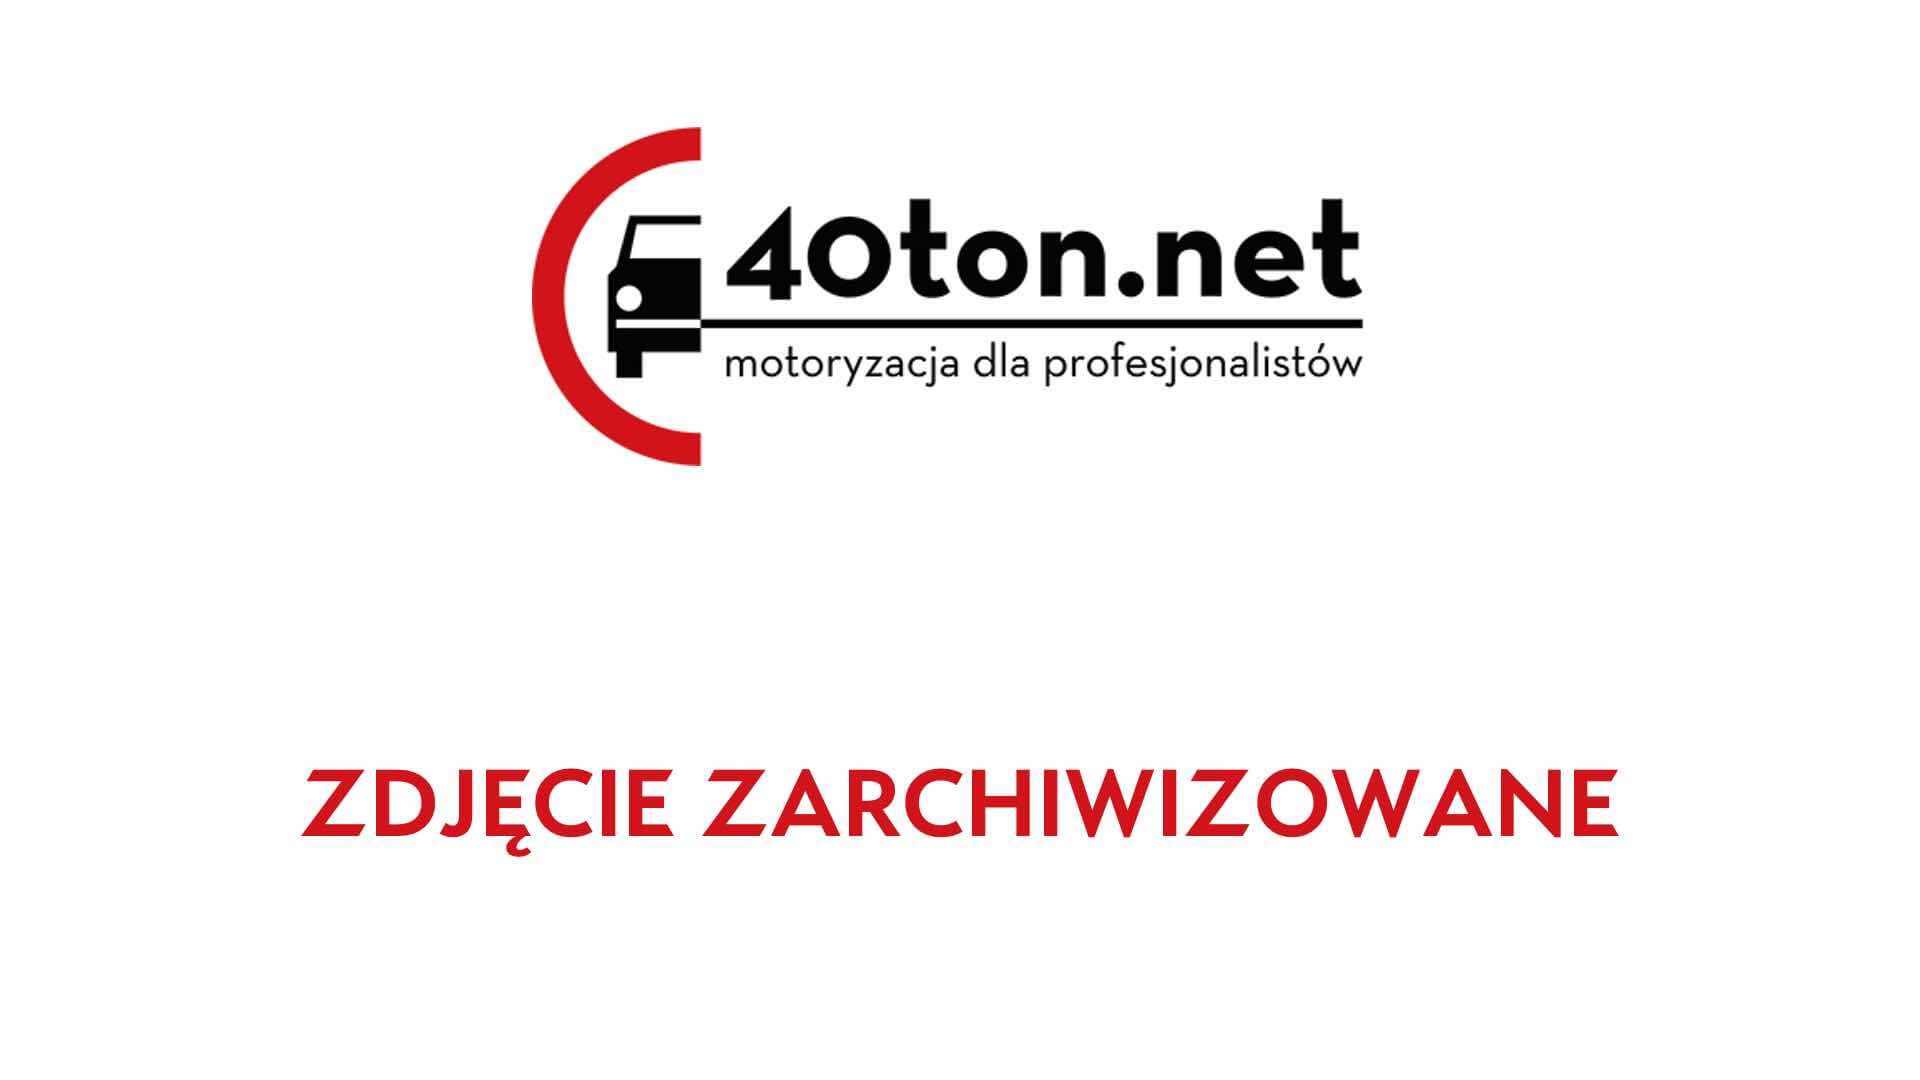 polskie_ciezarowki_40ton_truckspotters_1312